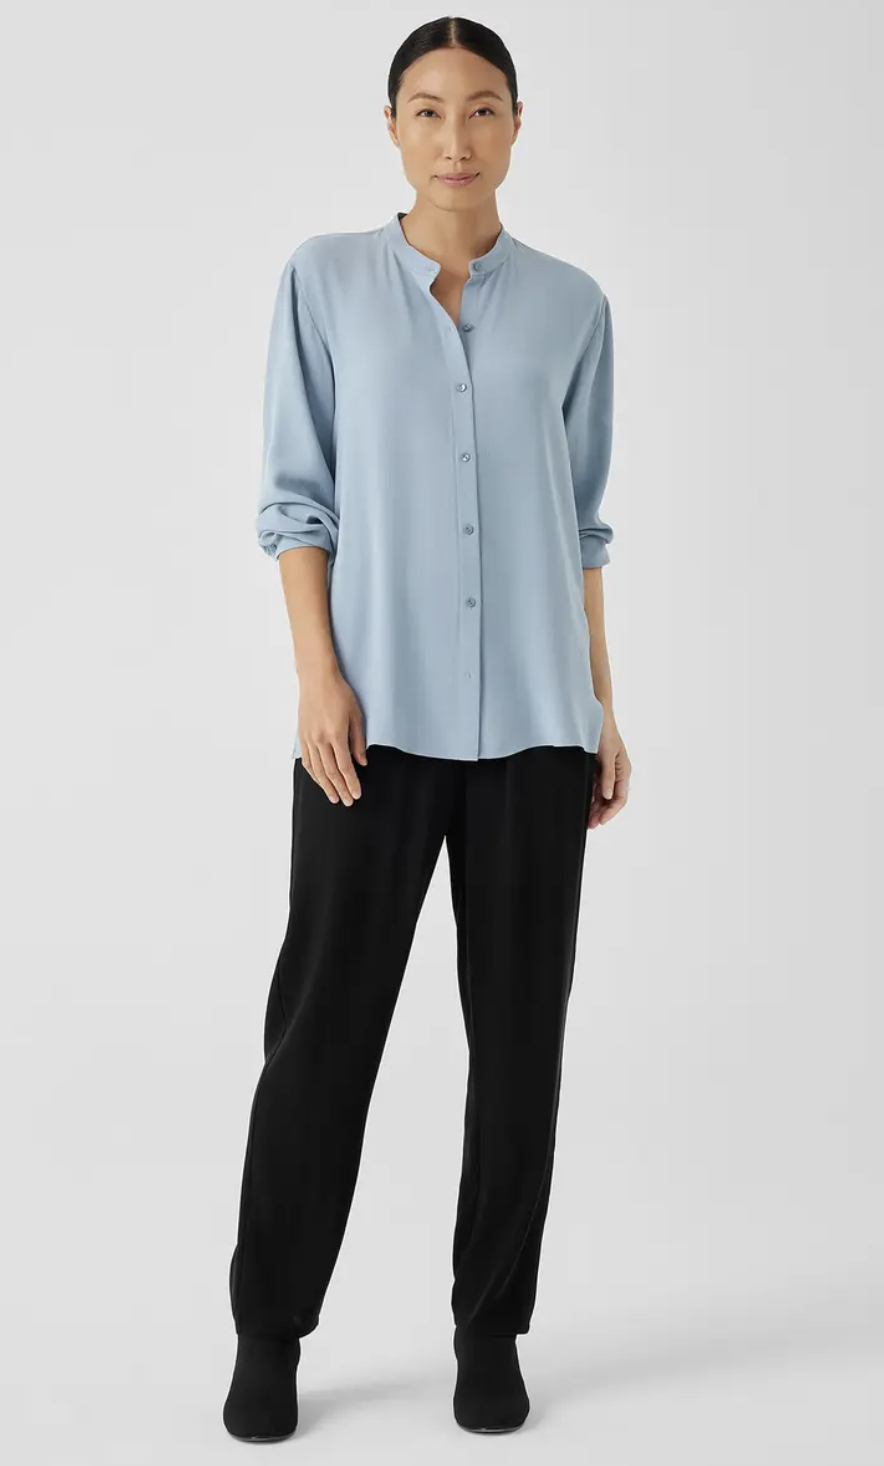 model in the light blue blouse